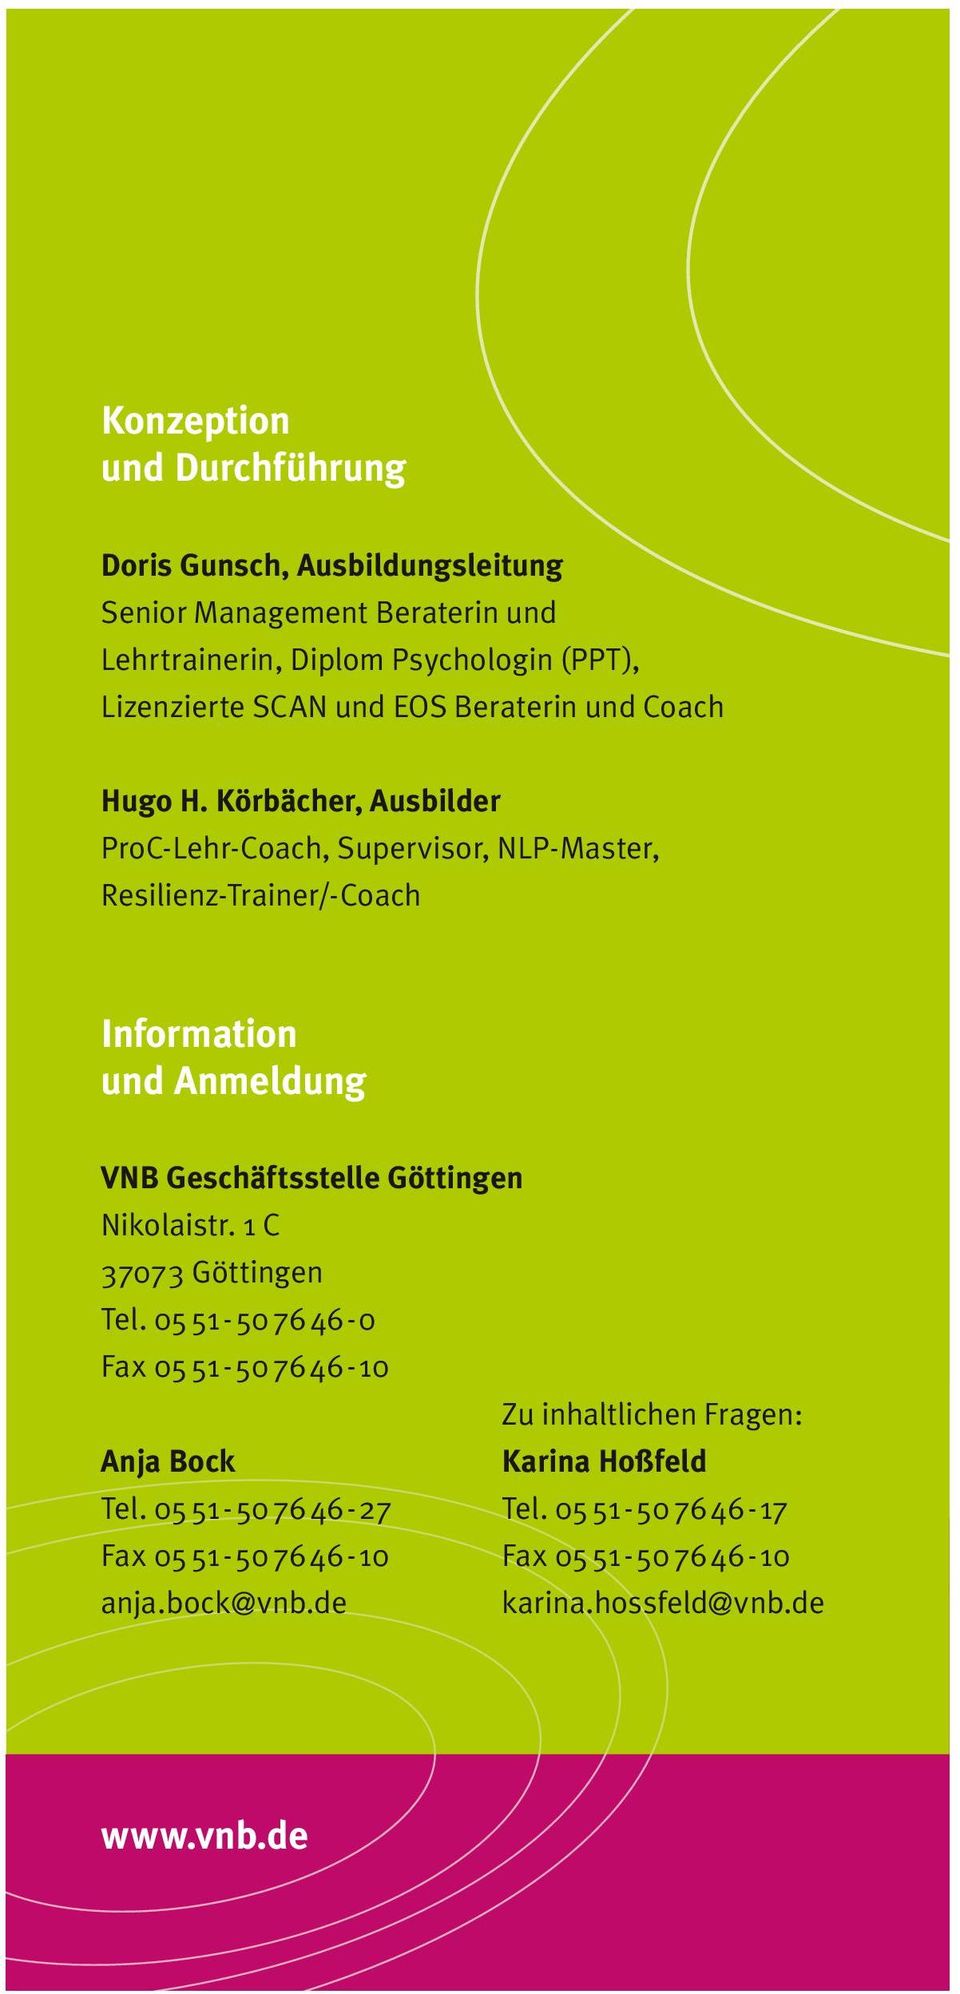 Körbächer, Ausbilder ProC-Lehr-Coach, Supervisor, NLP-Master, Resilienz-Trainer/-Coach Information und Anmeldung VNB Geschäftsstelle Göttingen